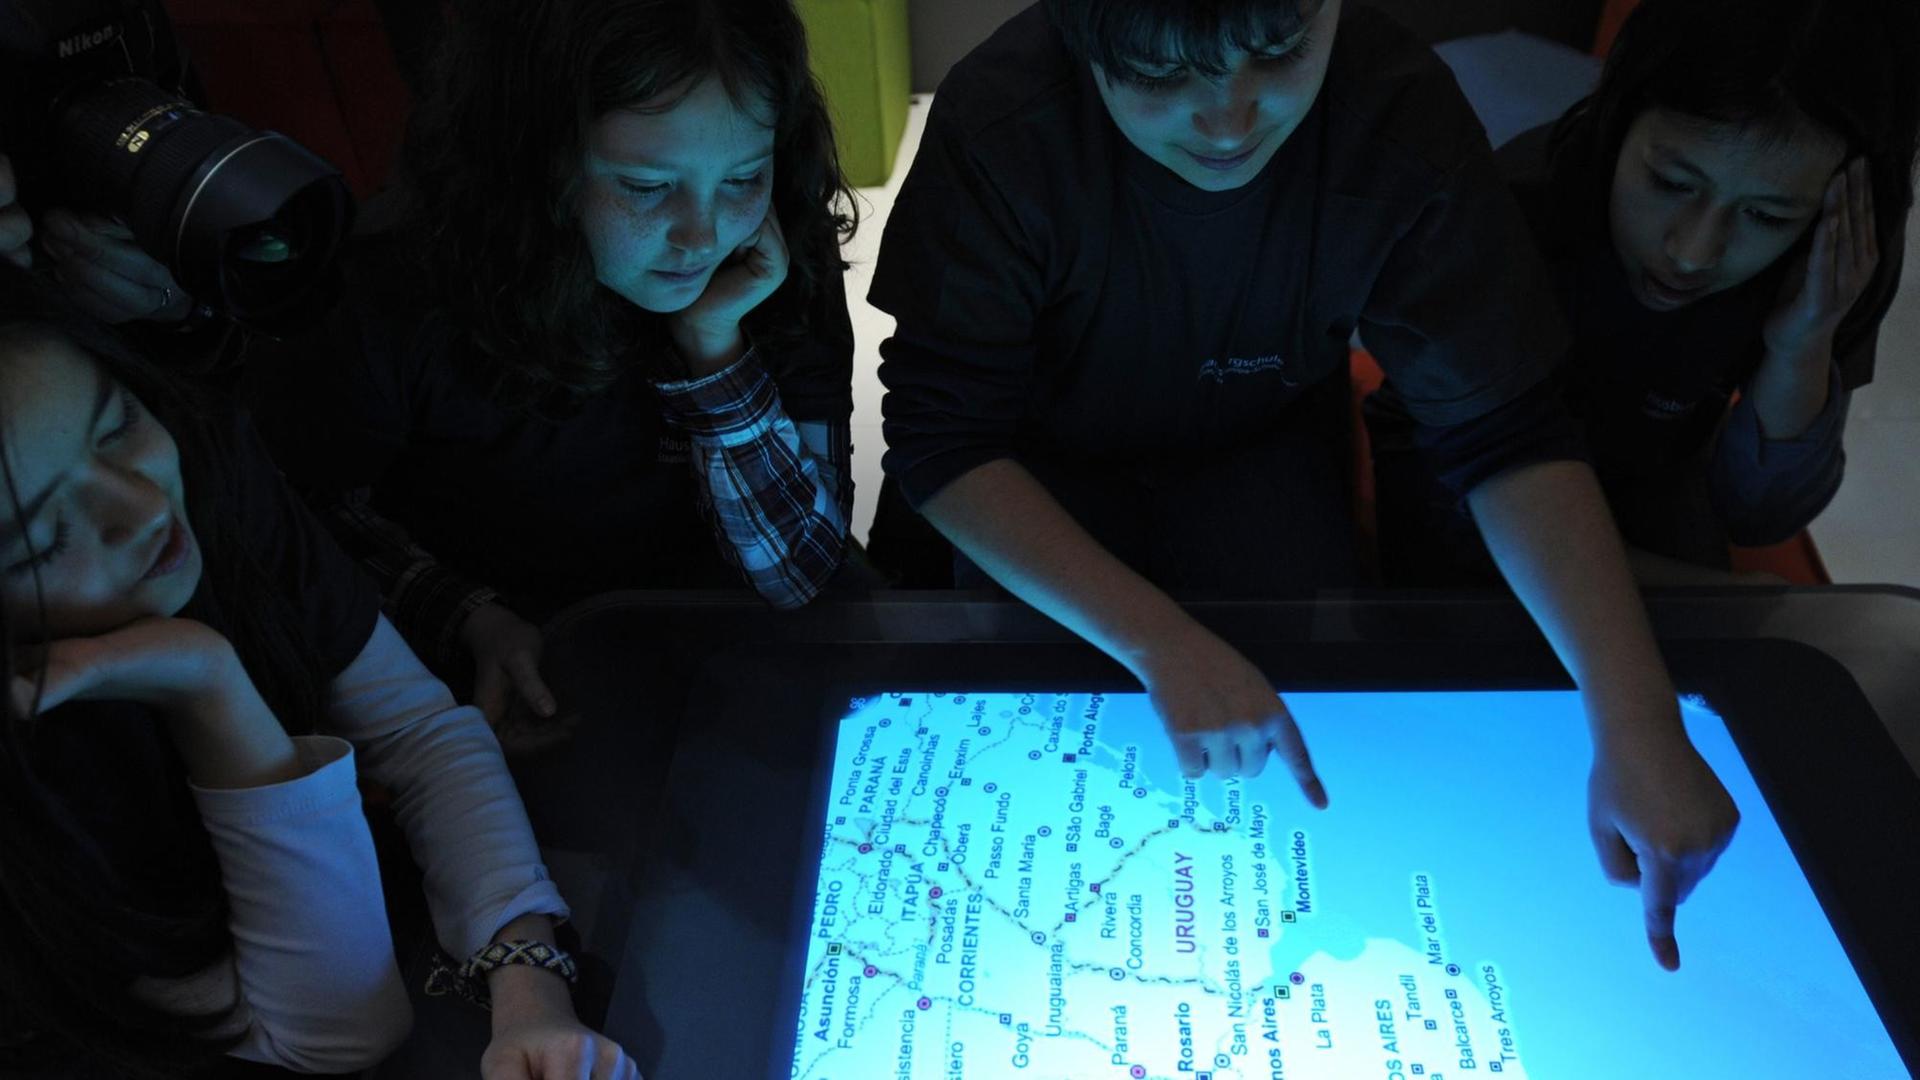 Unter dem Motto "Digitales Klassenzimmer" arbeiten am Montag (01.03.2010) Kinder auf dem CeBIT-Stand von Microsoft auf dem Messegelände in Hannover an einem sogenannten "Multitouch Whiteboard".